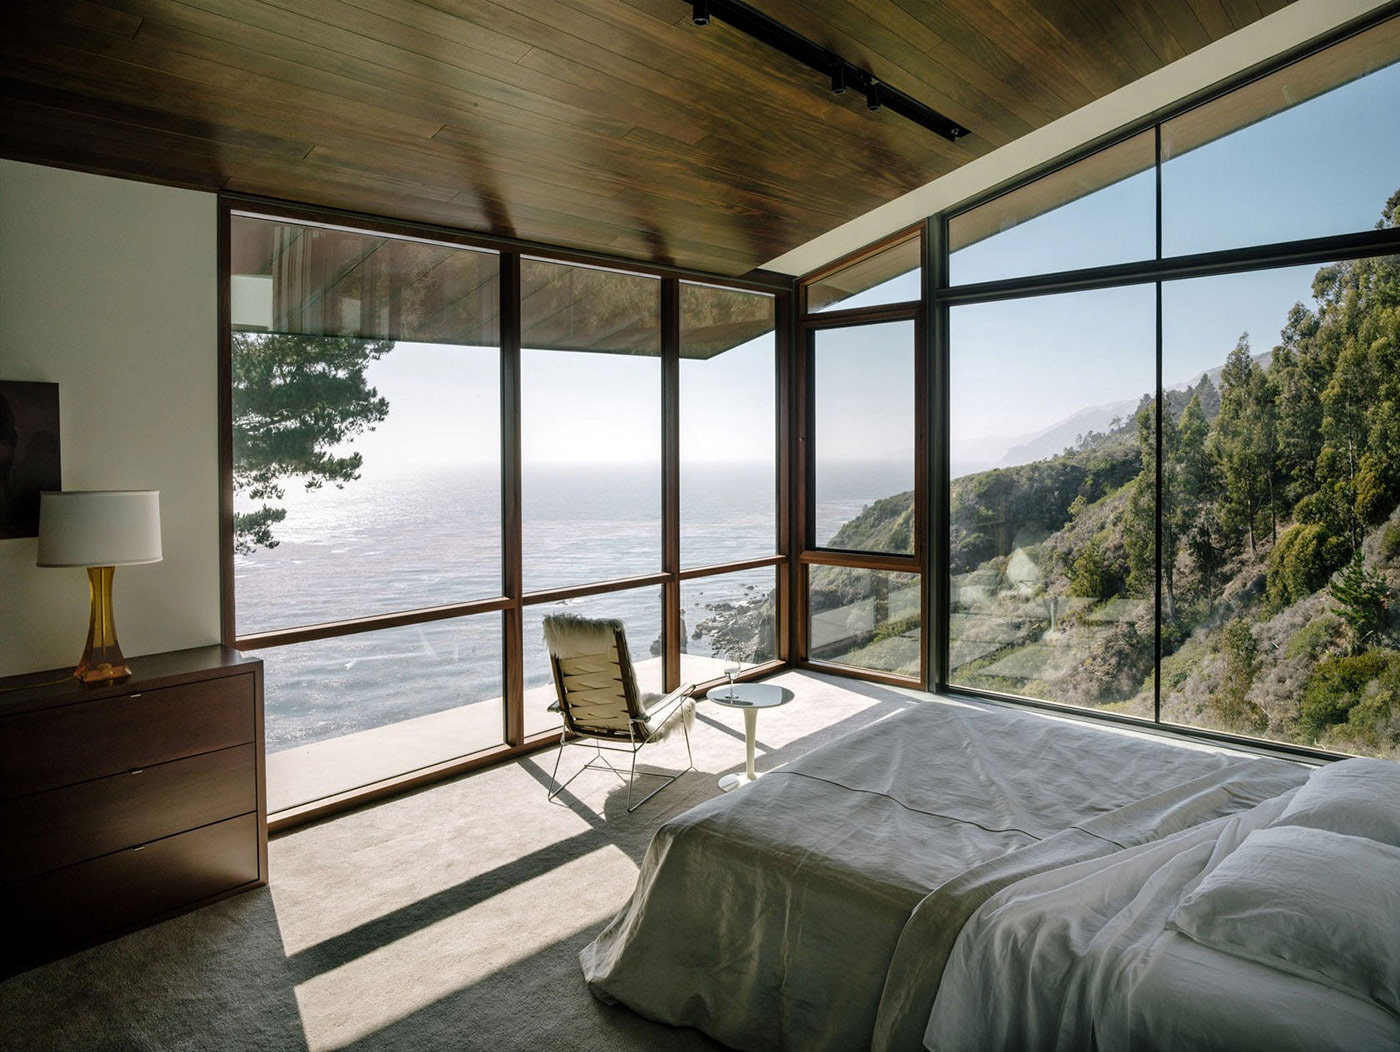 intérieur de la chambre dans une maison de campagne avec fenêtres panoramiques